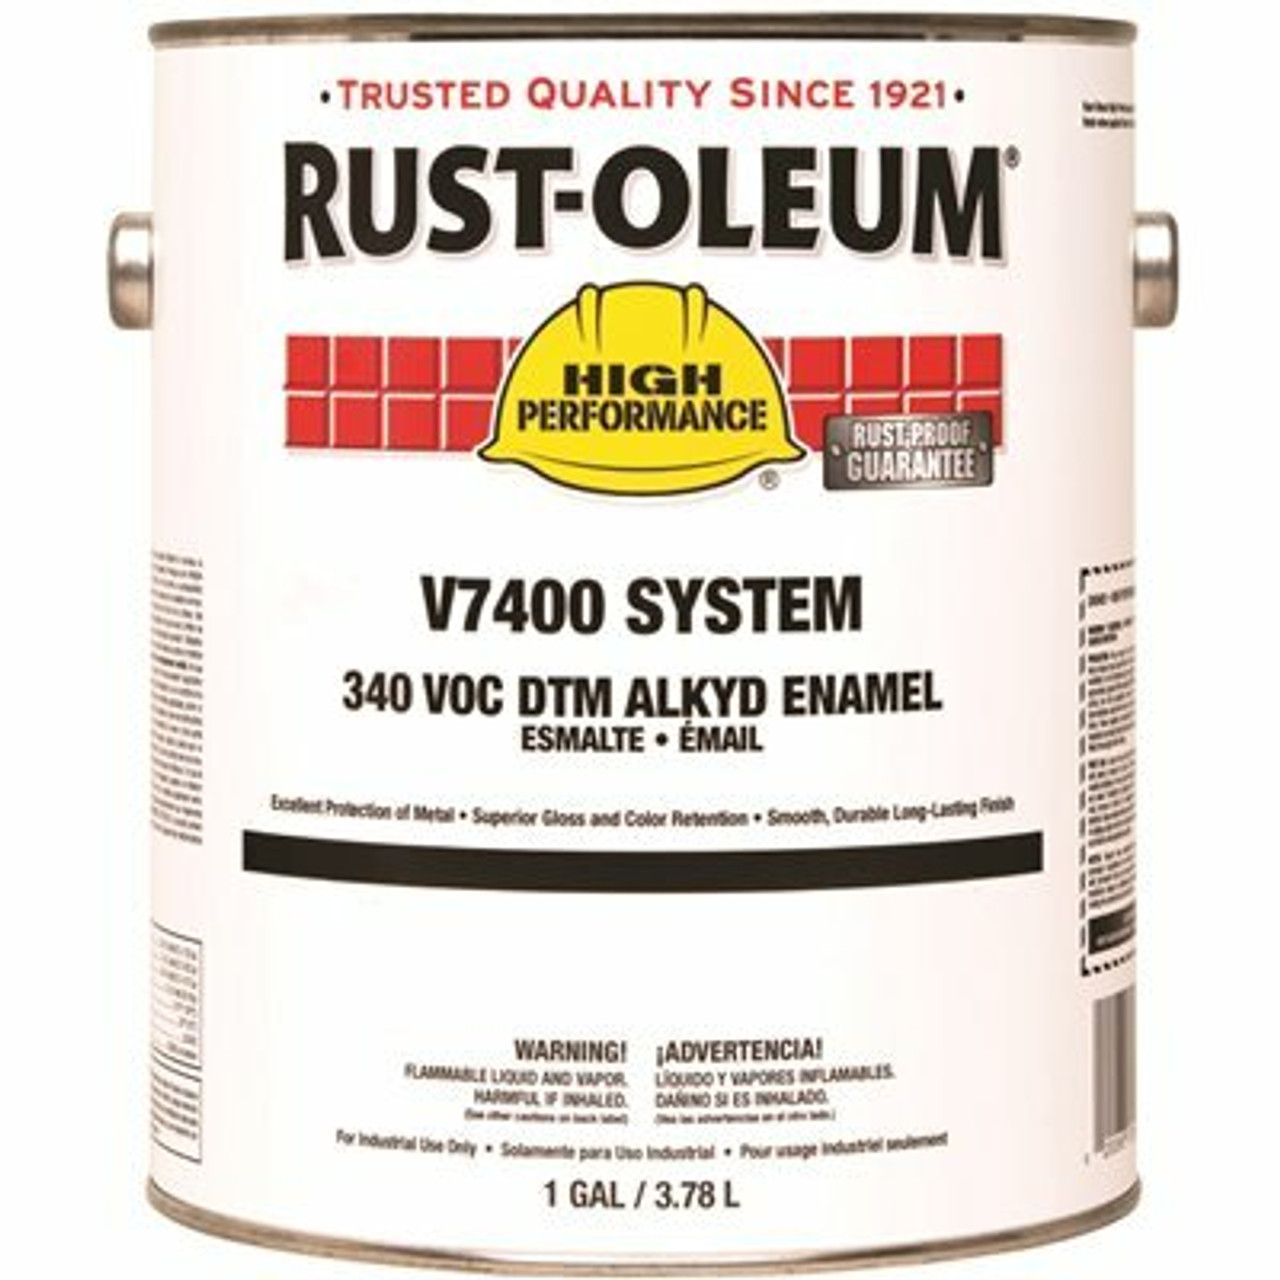 Rust-Oleum 1 Gal. V7400 340 Voc Dtm Silver Gray Interior/Exterior Alkyd Enamel Paint